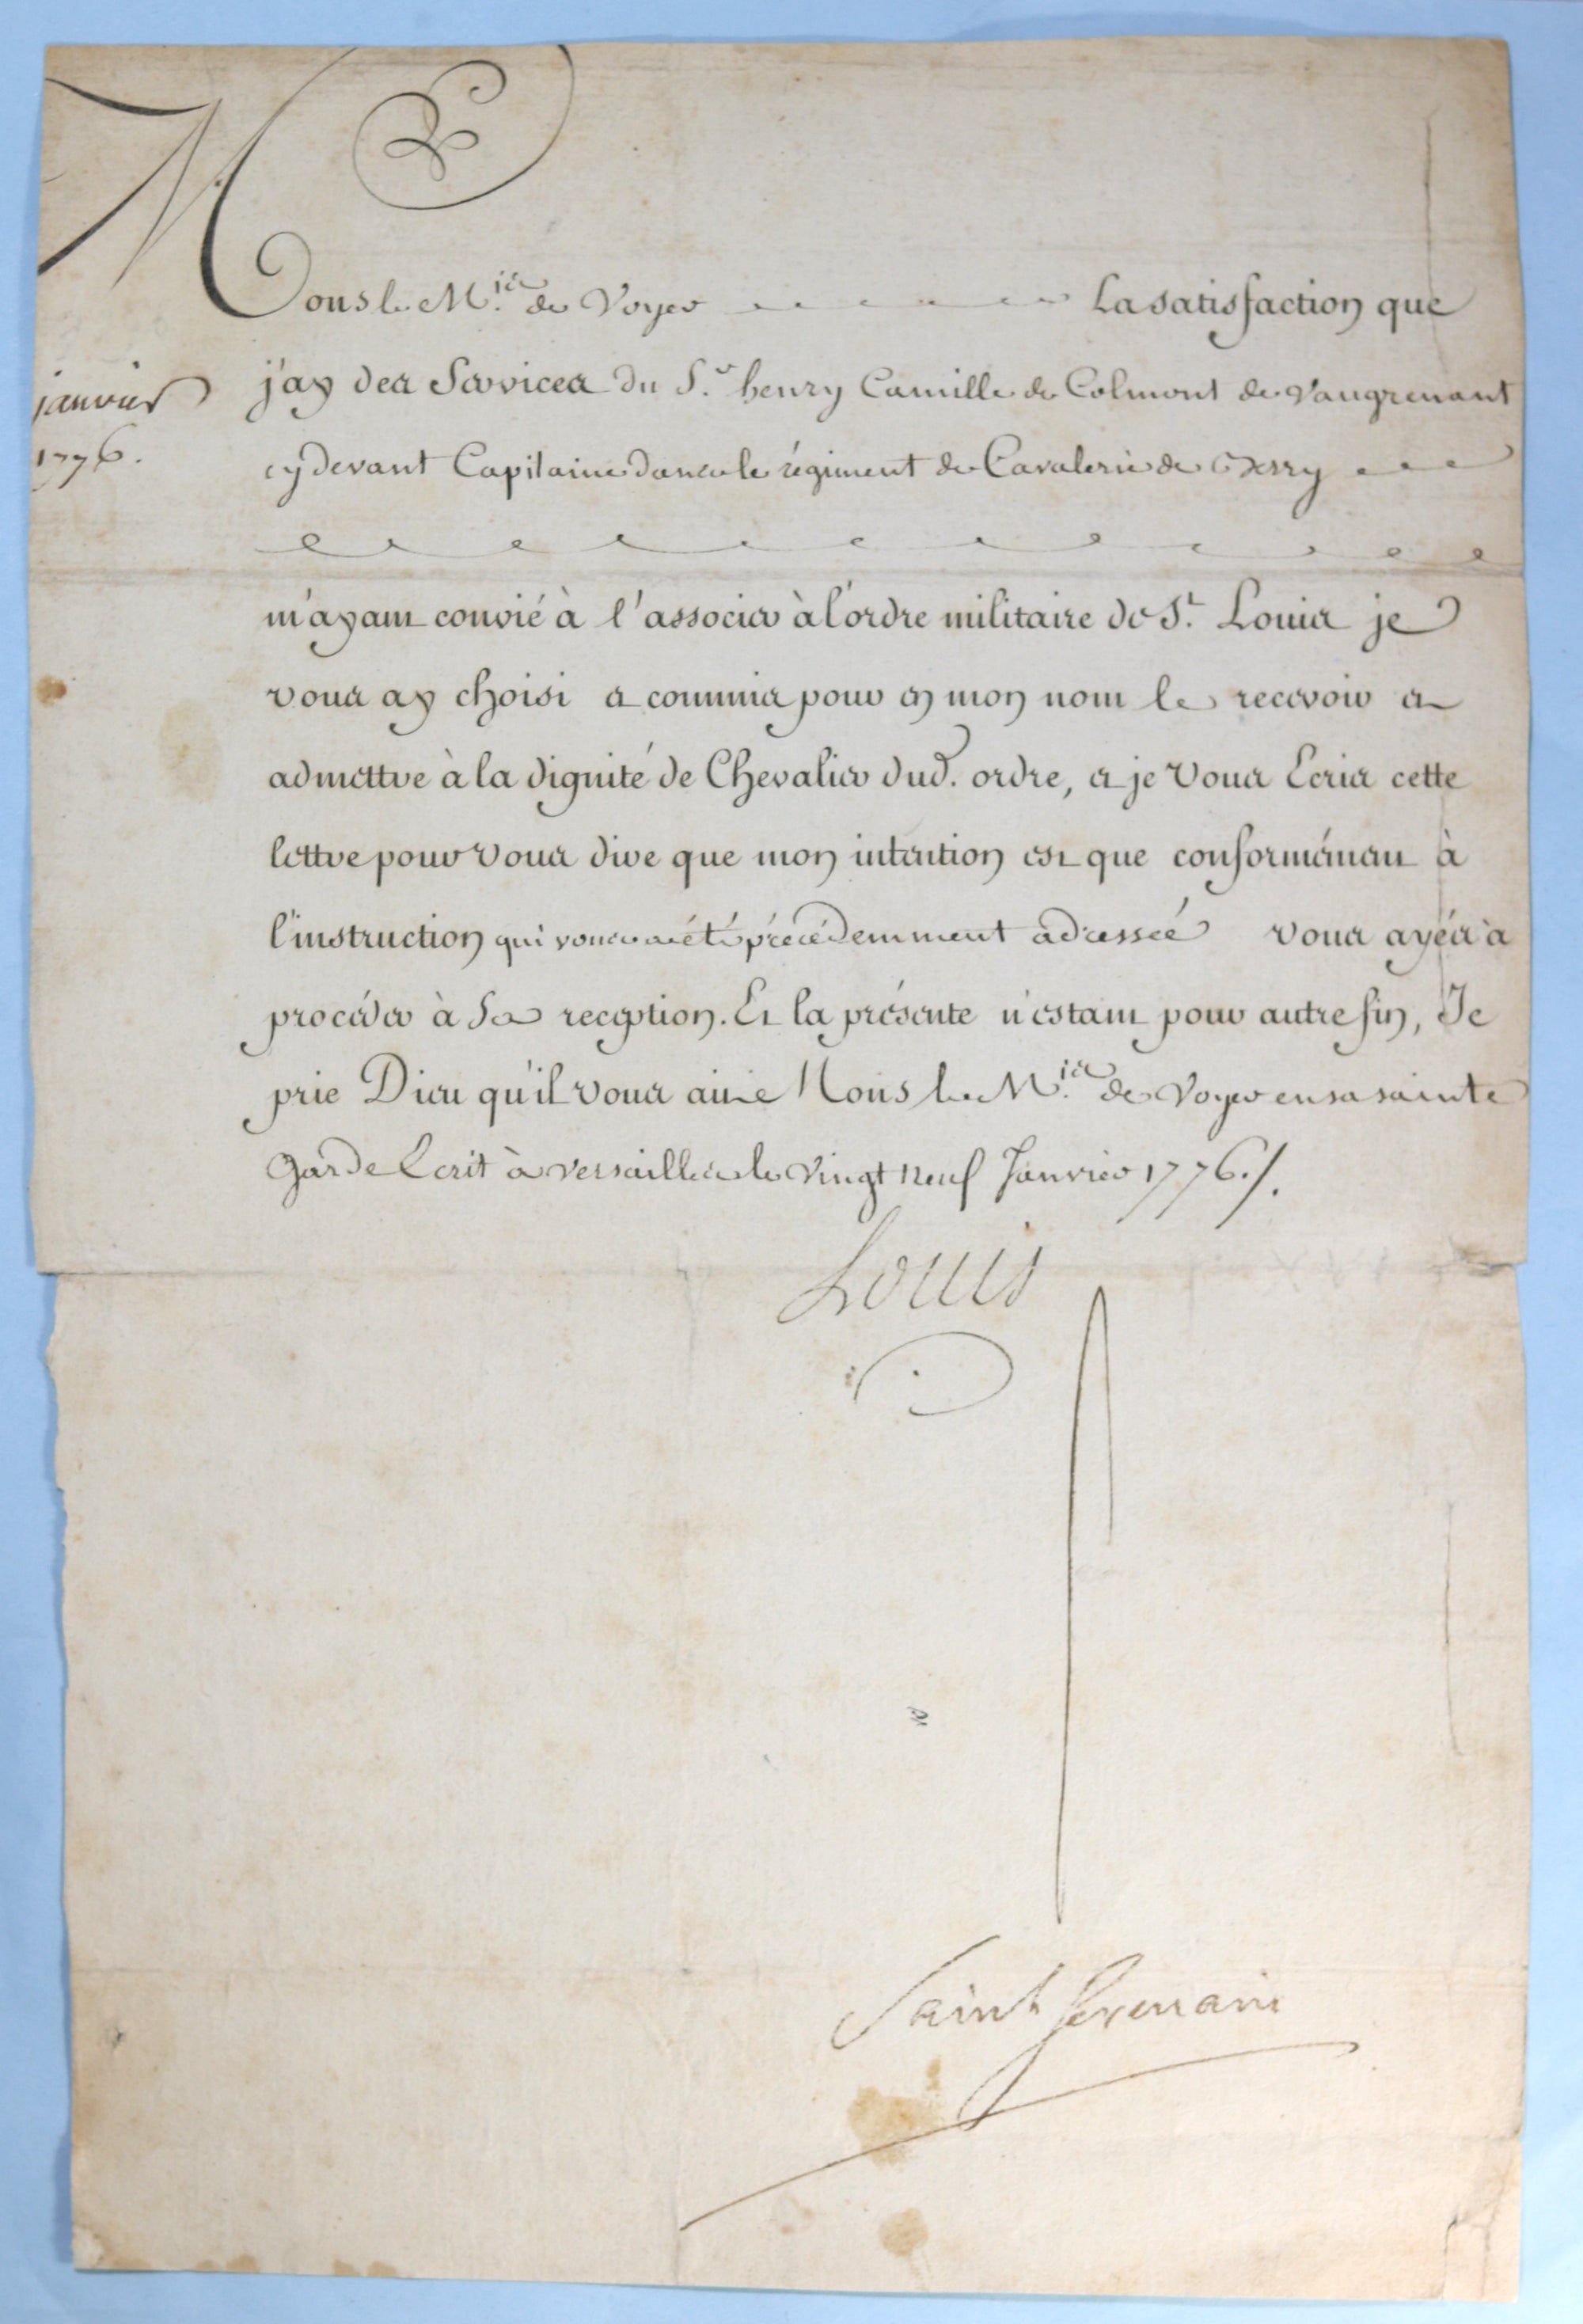 1776 Ordre Militaire de St. Louis pour capitaine, signé Louis et Saint-Germain